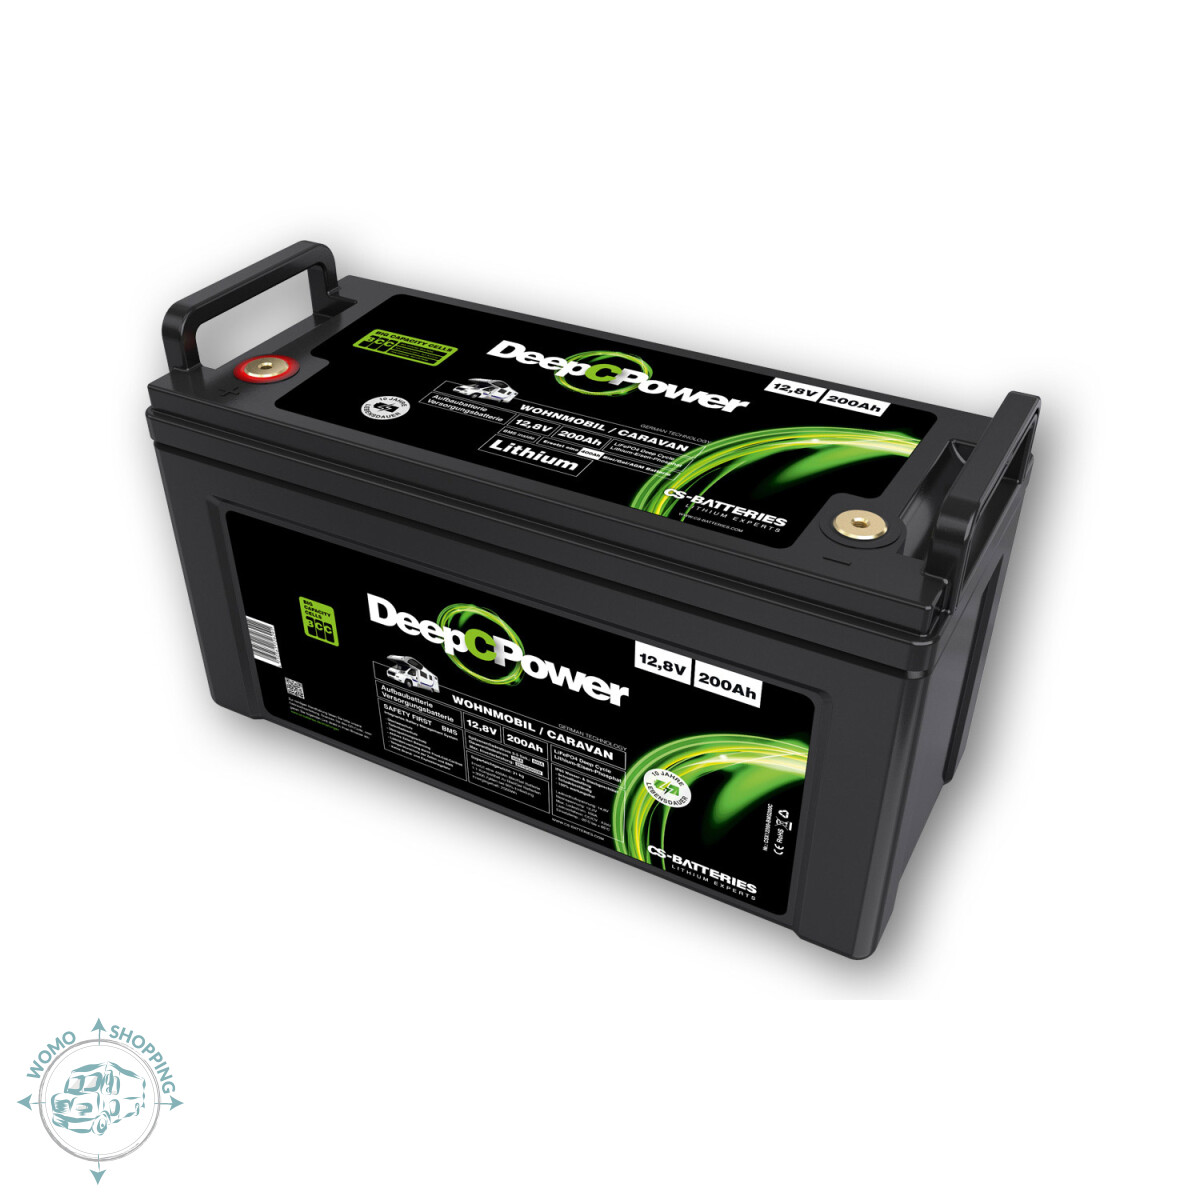 200 AH LiFePO4 kräftige Lithium Batterie für Wohnmobile, 1.588,00 €